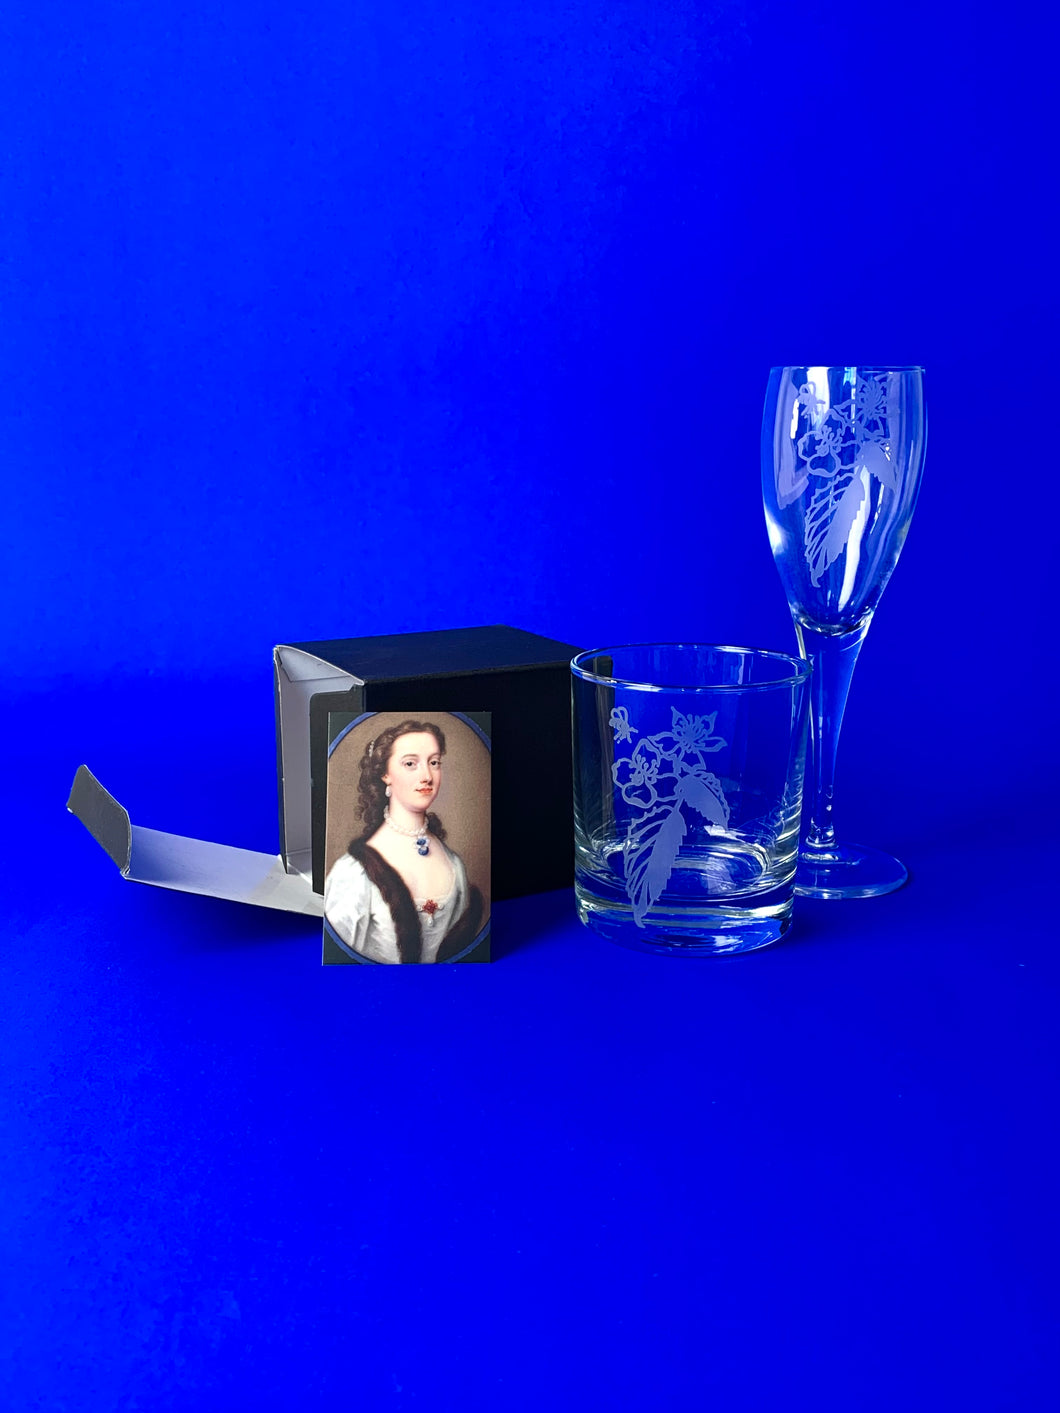 哈利画廊 商店 Online //萨拉·纽曼(Sara Newman)为波特兰收藏博物馆(The Portland Collection museum)提供的独家玻璃器皿